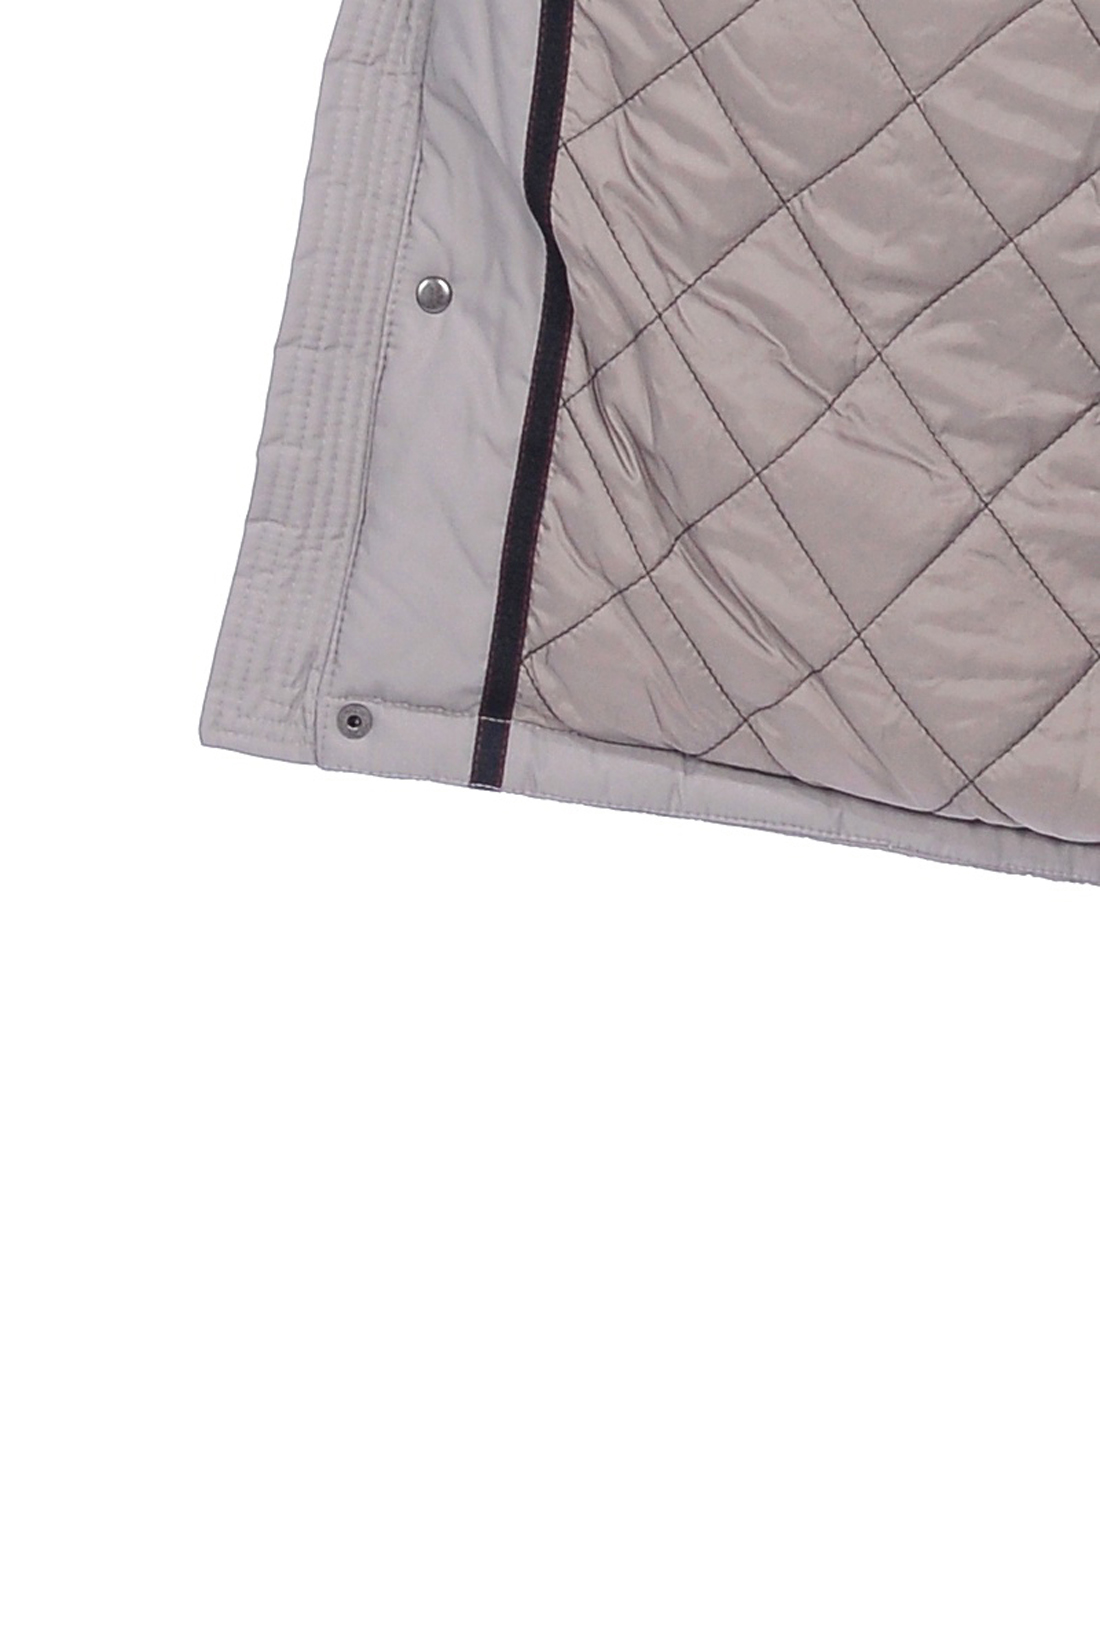 Куртка с закрытым капюшоном (арт. baon B538531), размер S, цвет серый Куртка с закрытым капюшоном (арт. baon B538531) - фото 3